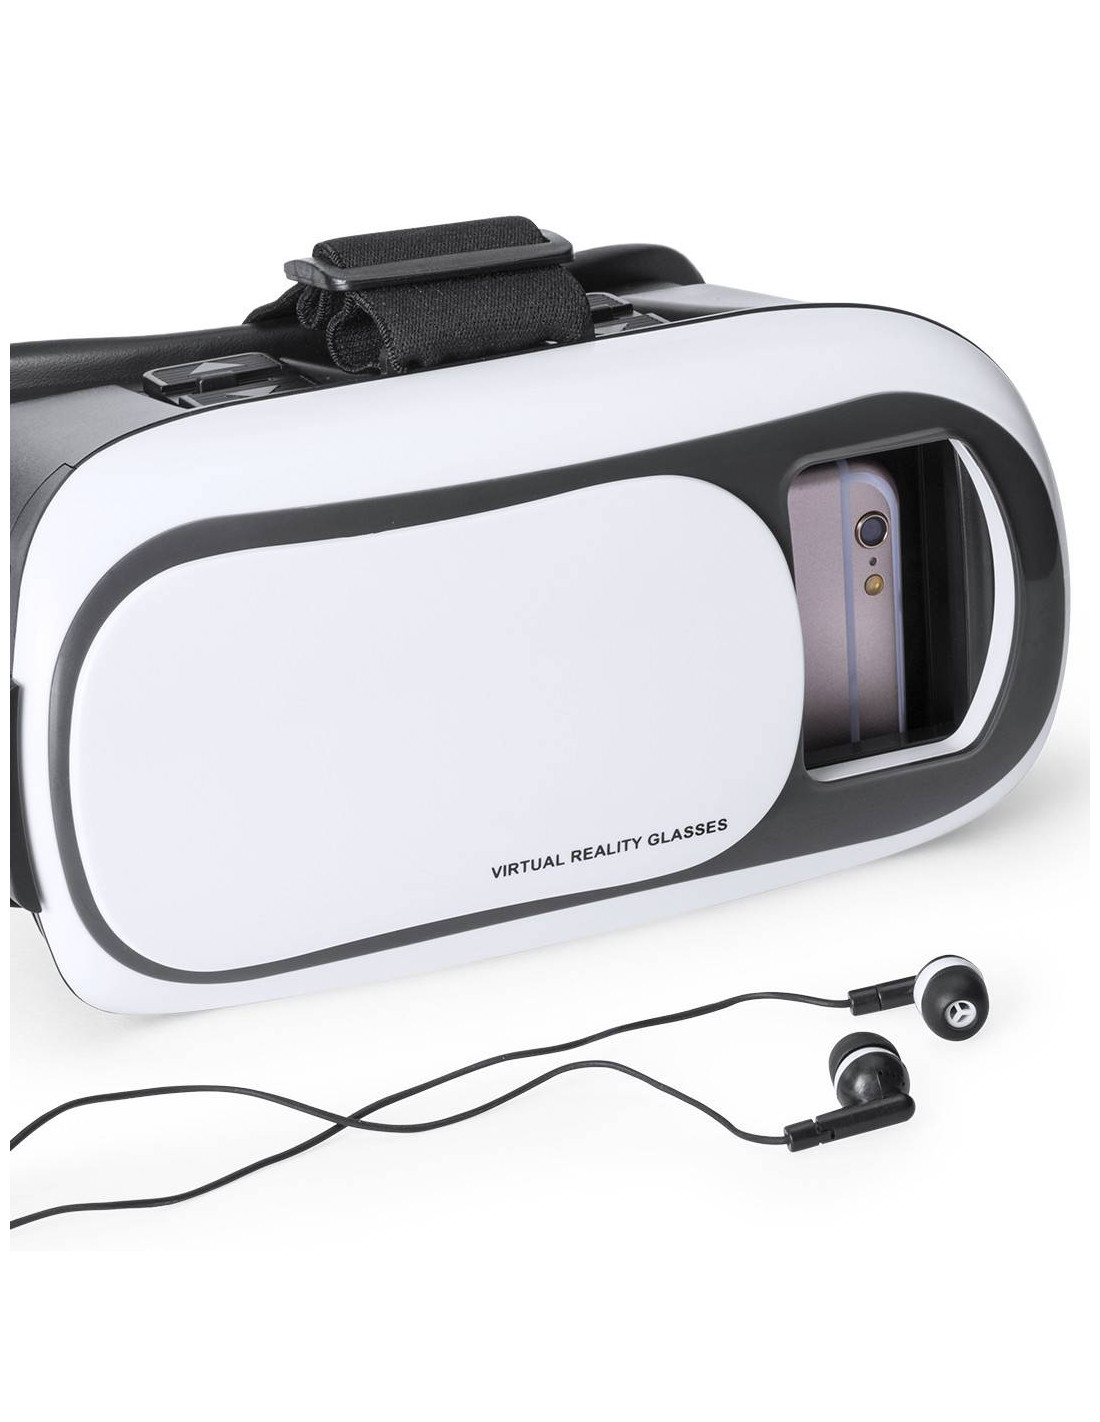 Gafas de realidad virtual para smartphone - dimensiones máx. 163 x 83 mm